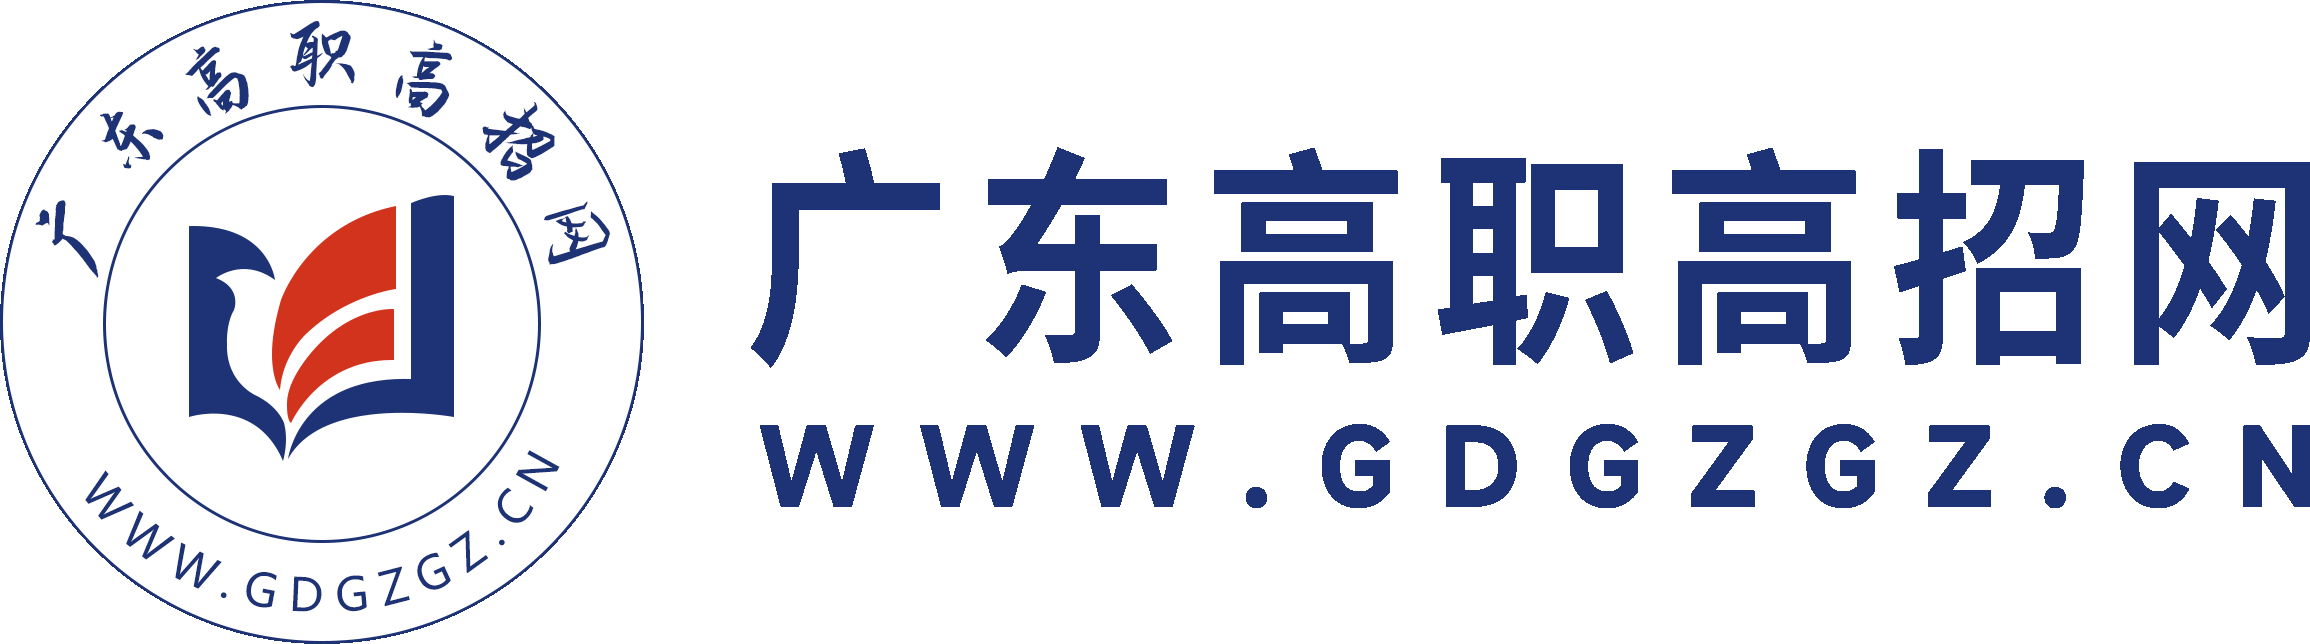 广东高职高考网-广东3+证书高考网